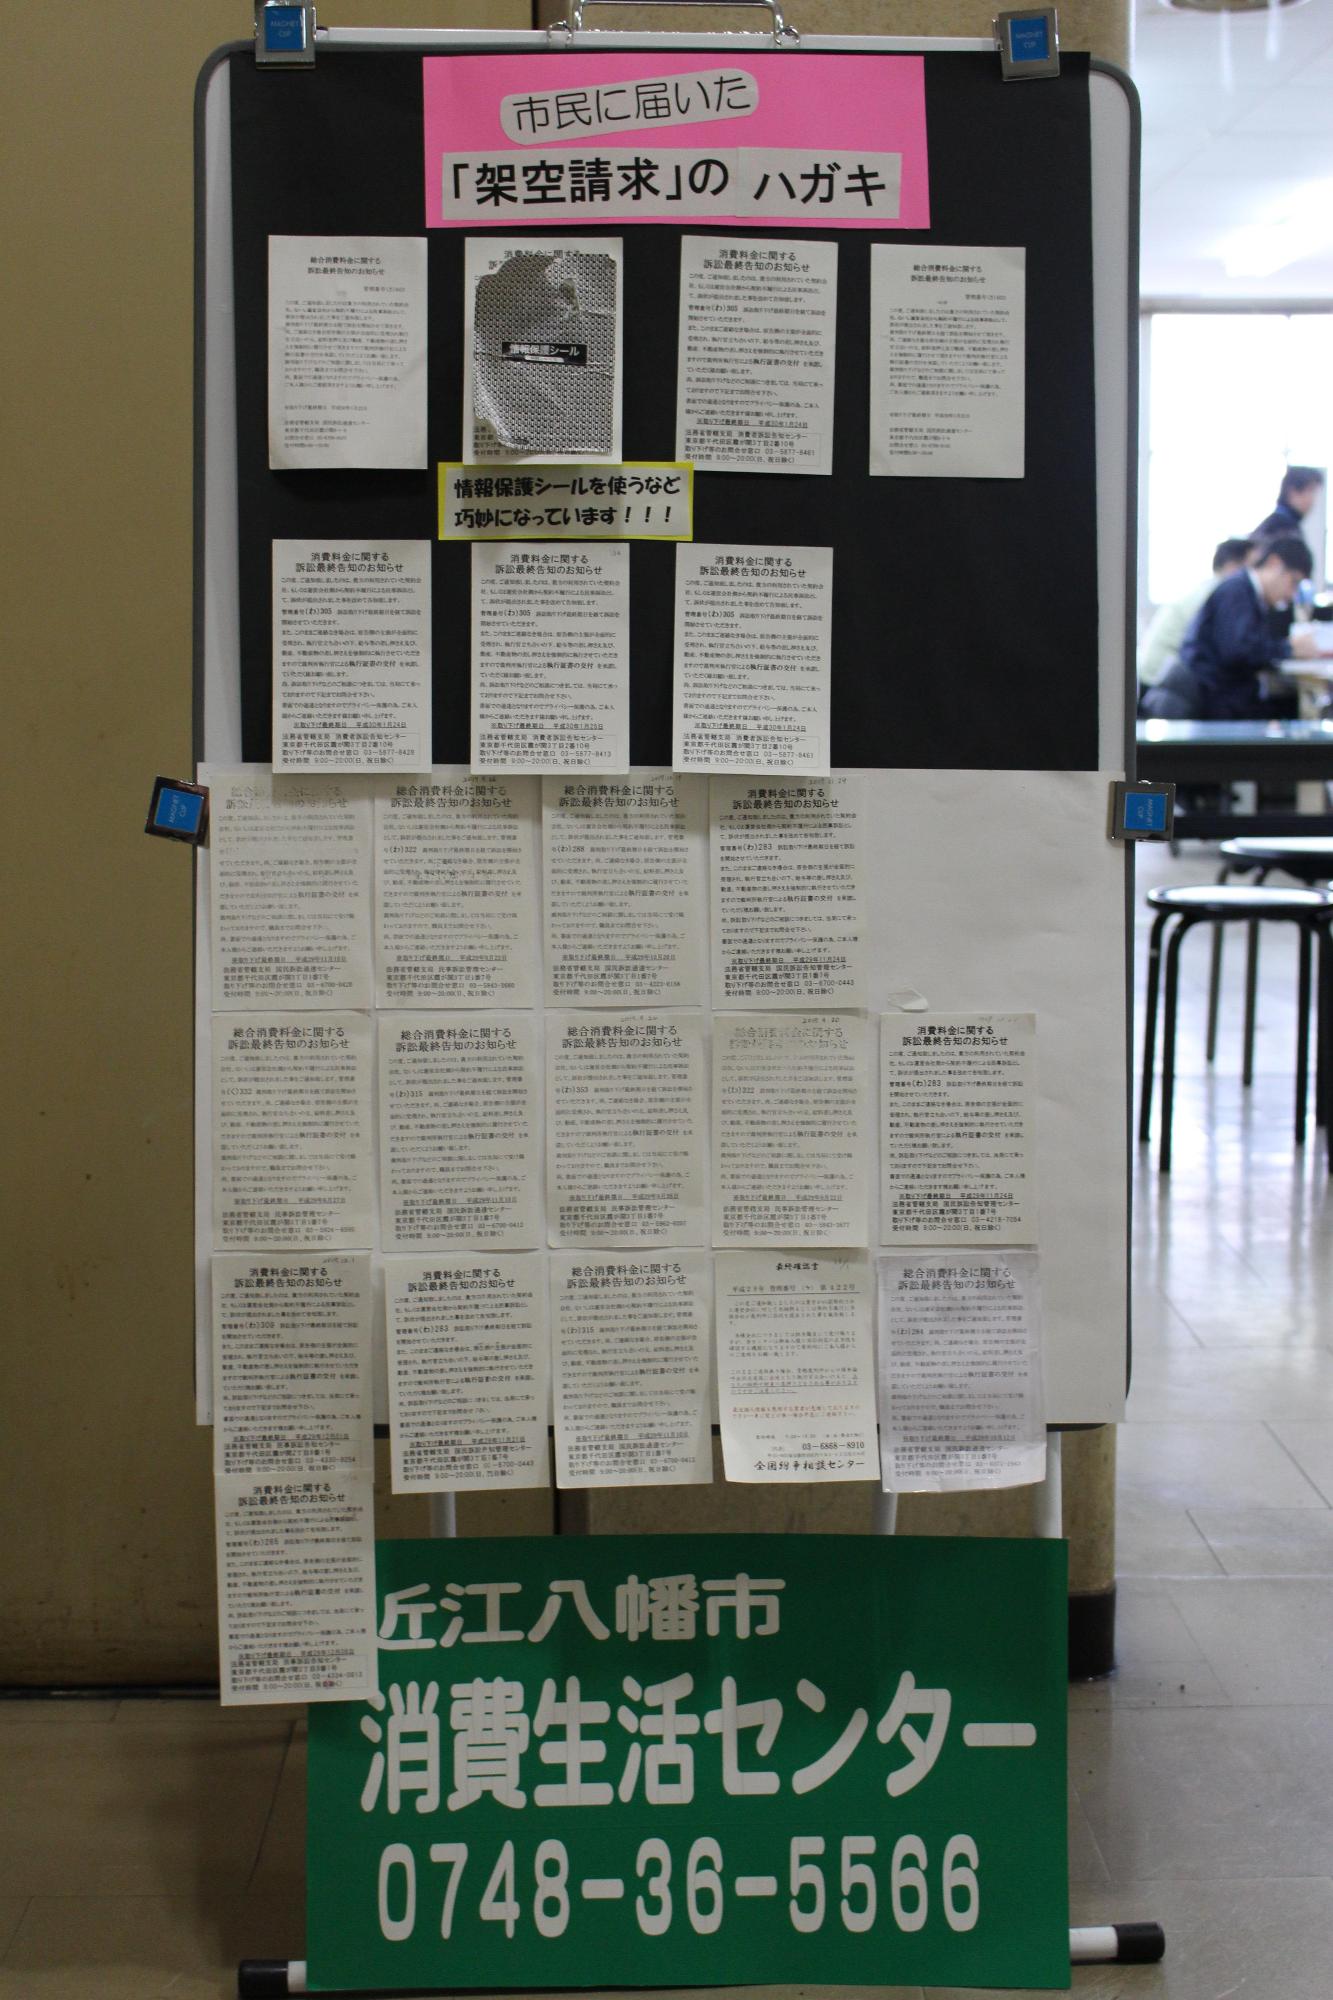 架空請求のハガキを大きくコピーした紙(十数枚)の下に、消費生活センターの電話番号が大きく書かれている掲示板の写真